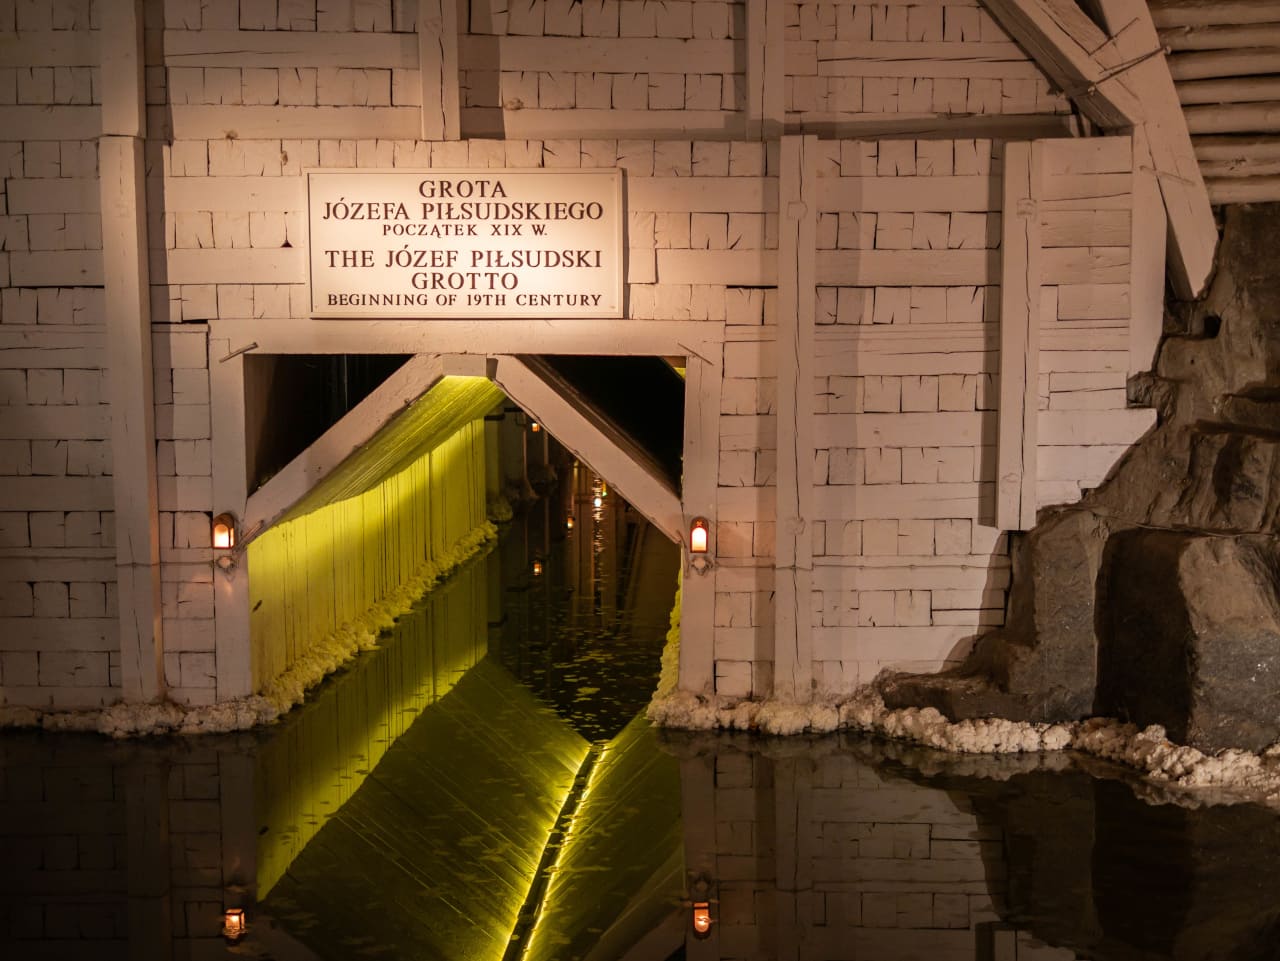 kopalnia soli w wieliczce komora józefa piłsudskiego